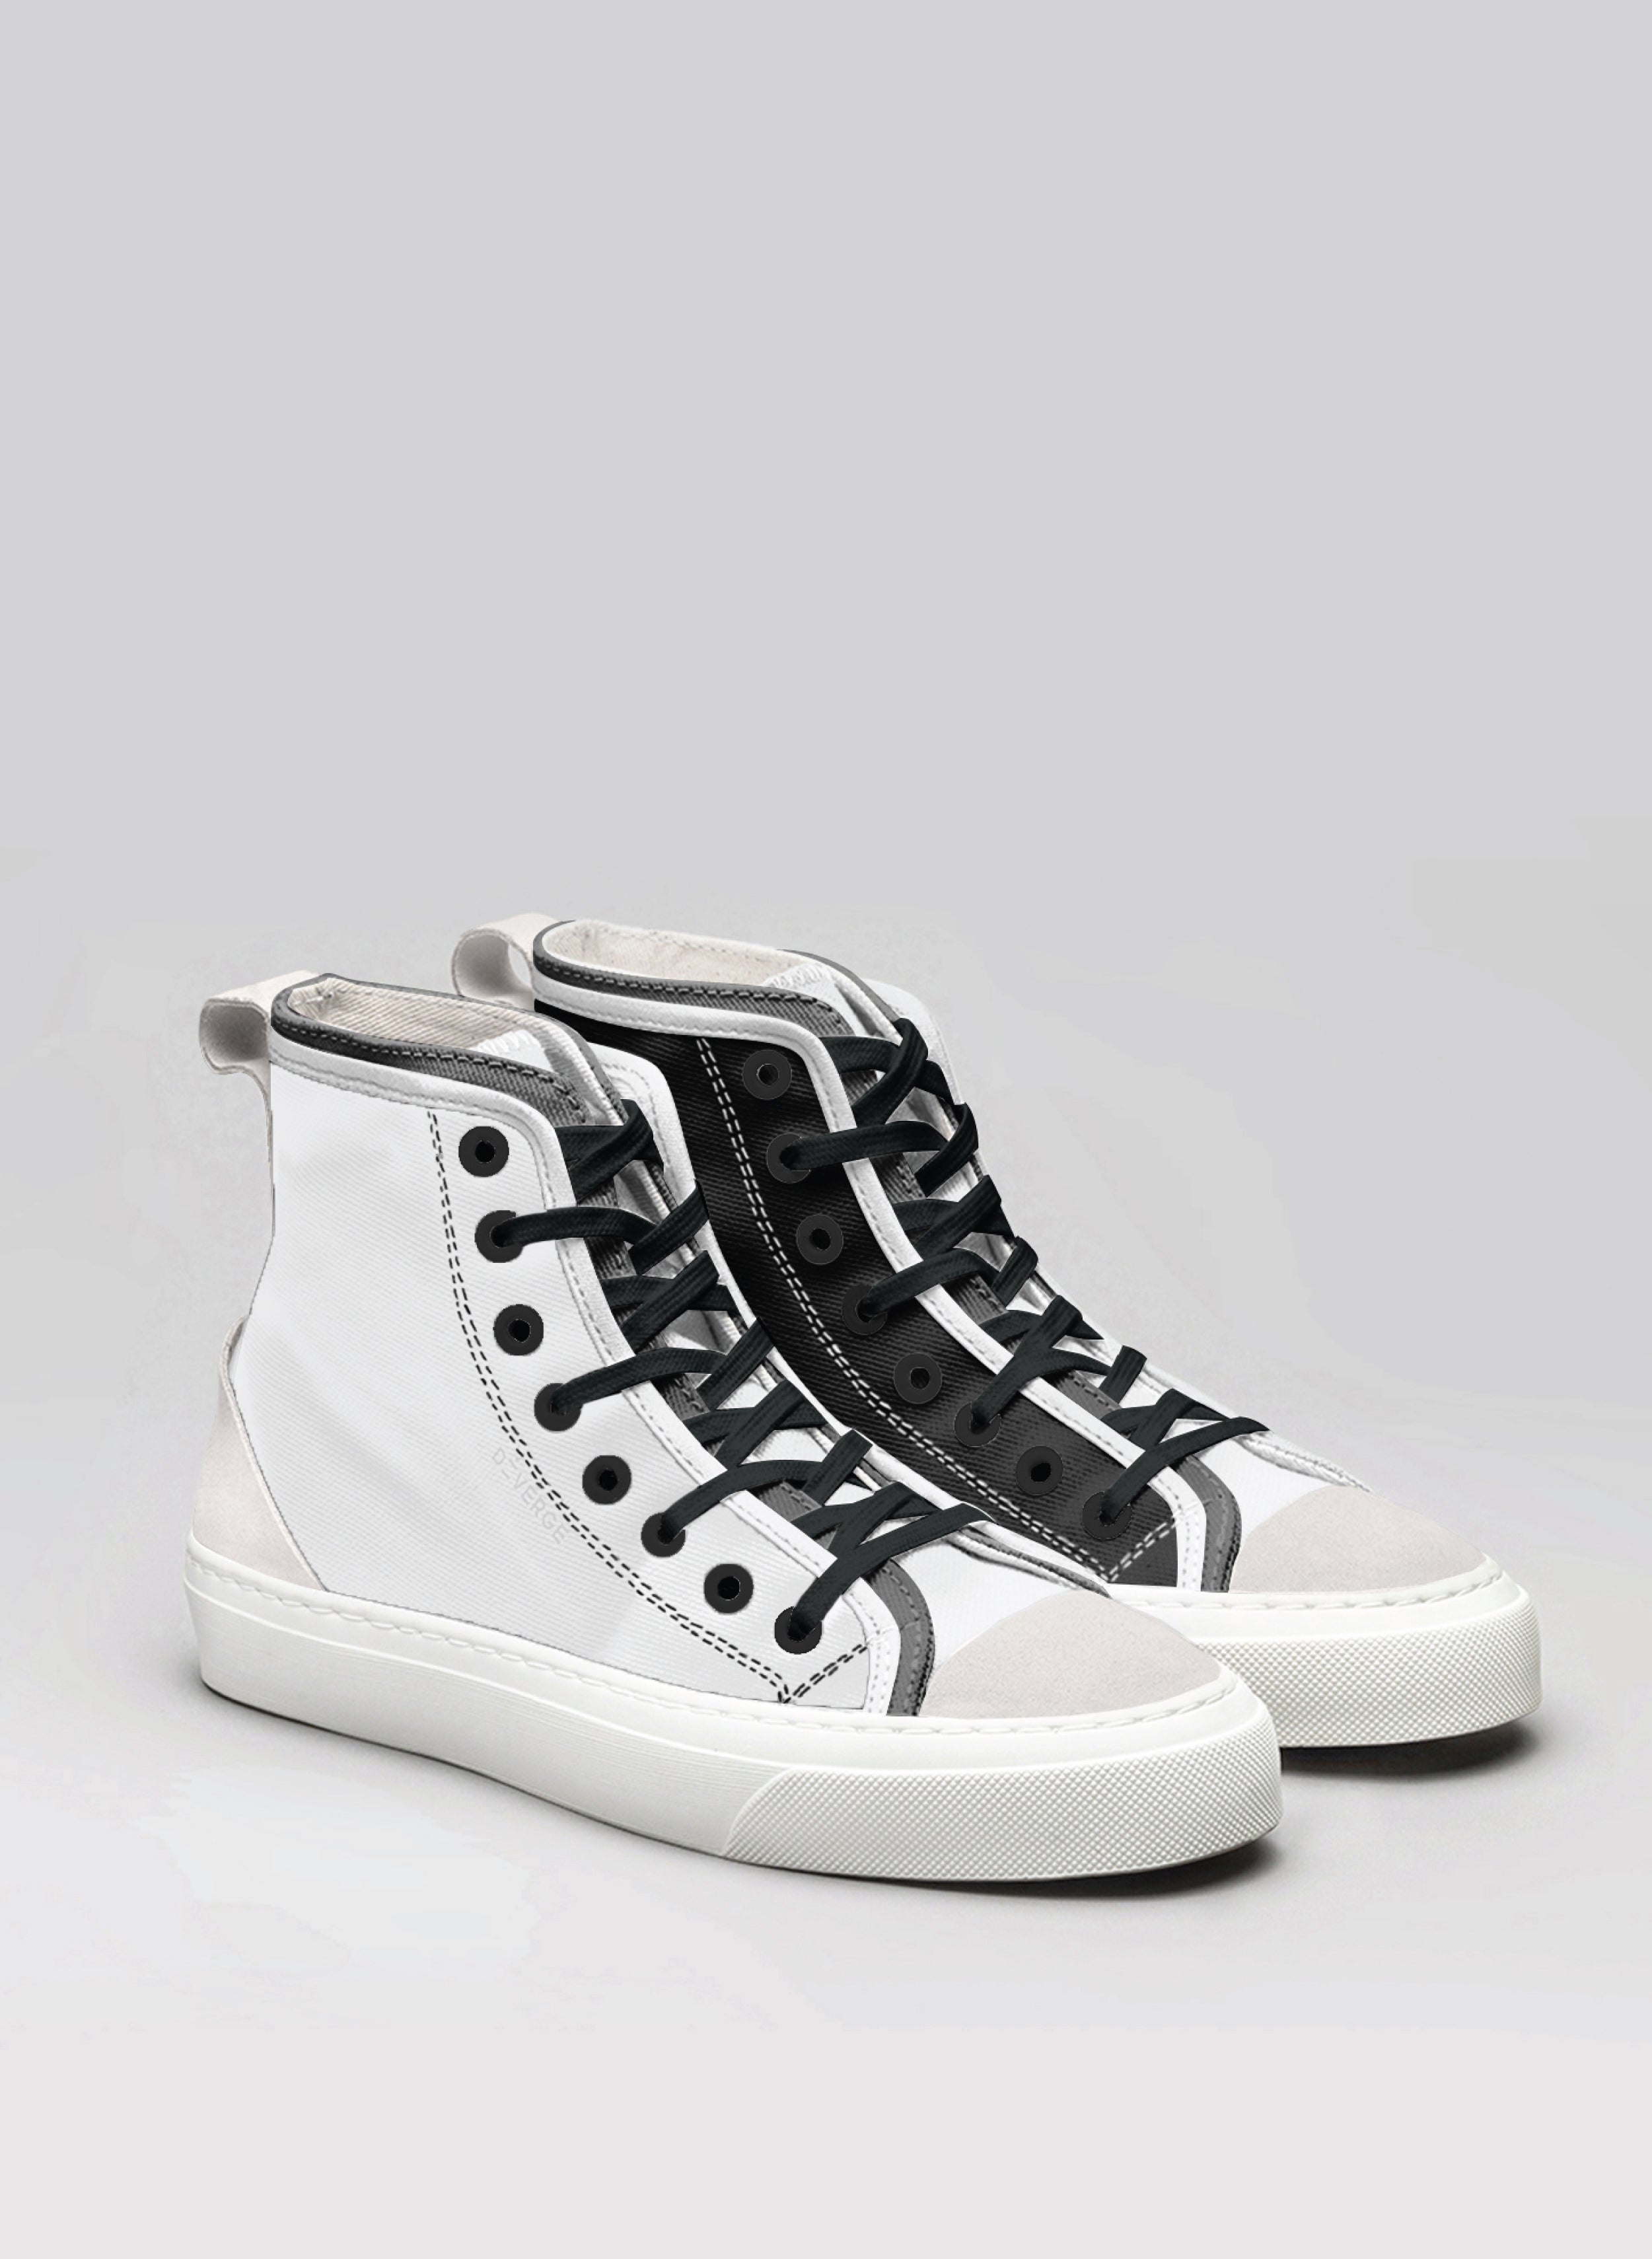 Une paire de chaussures noires et blanches Diverge sneakers , une paire de chaussures sur mesure.